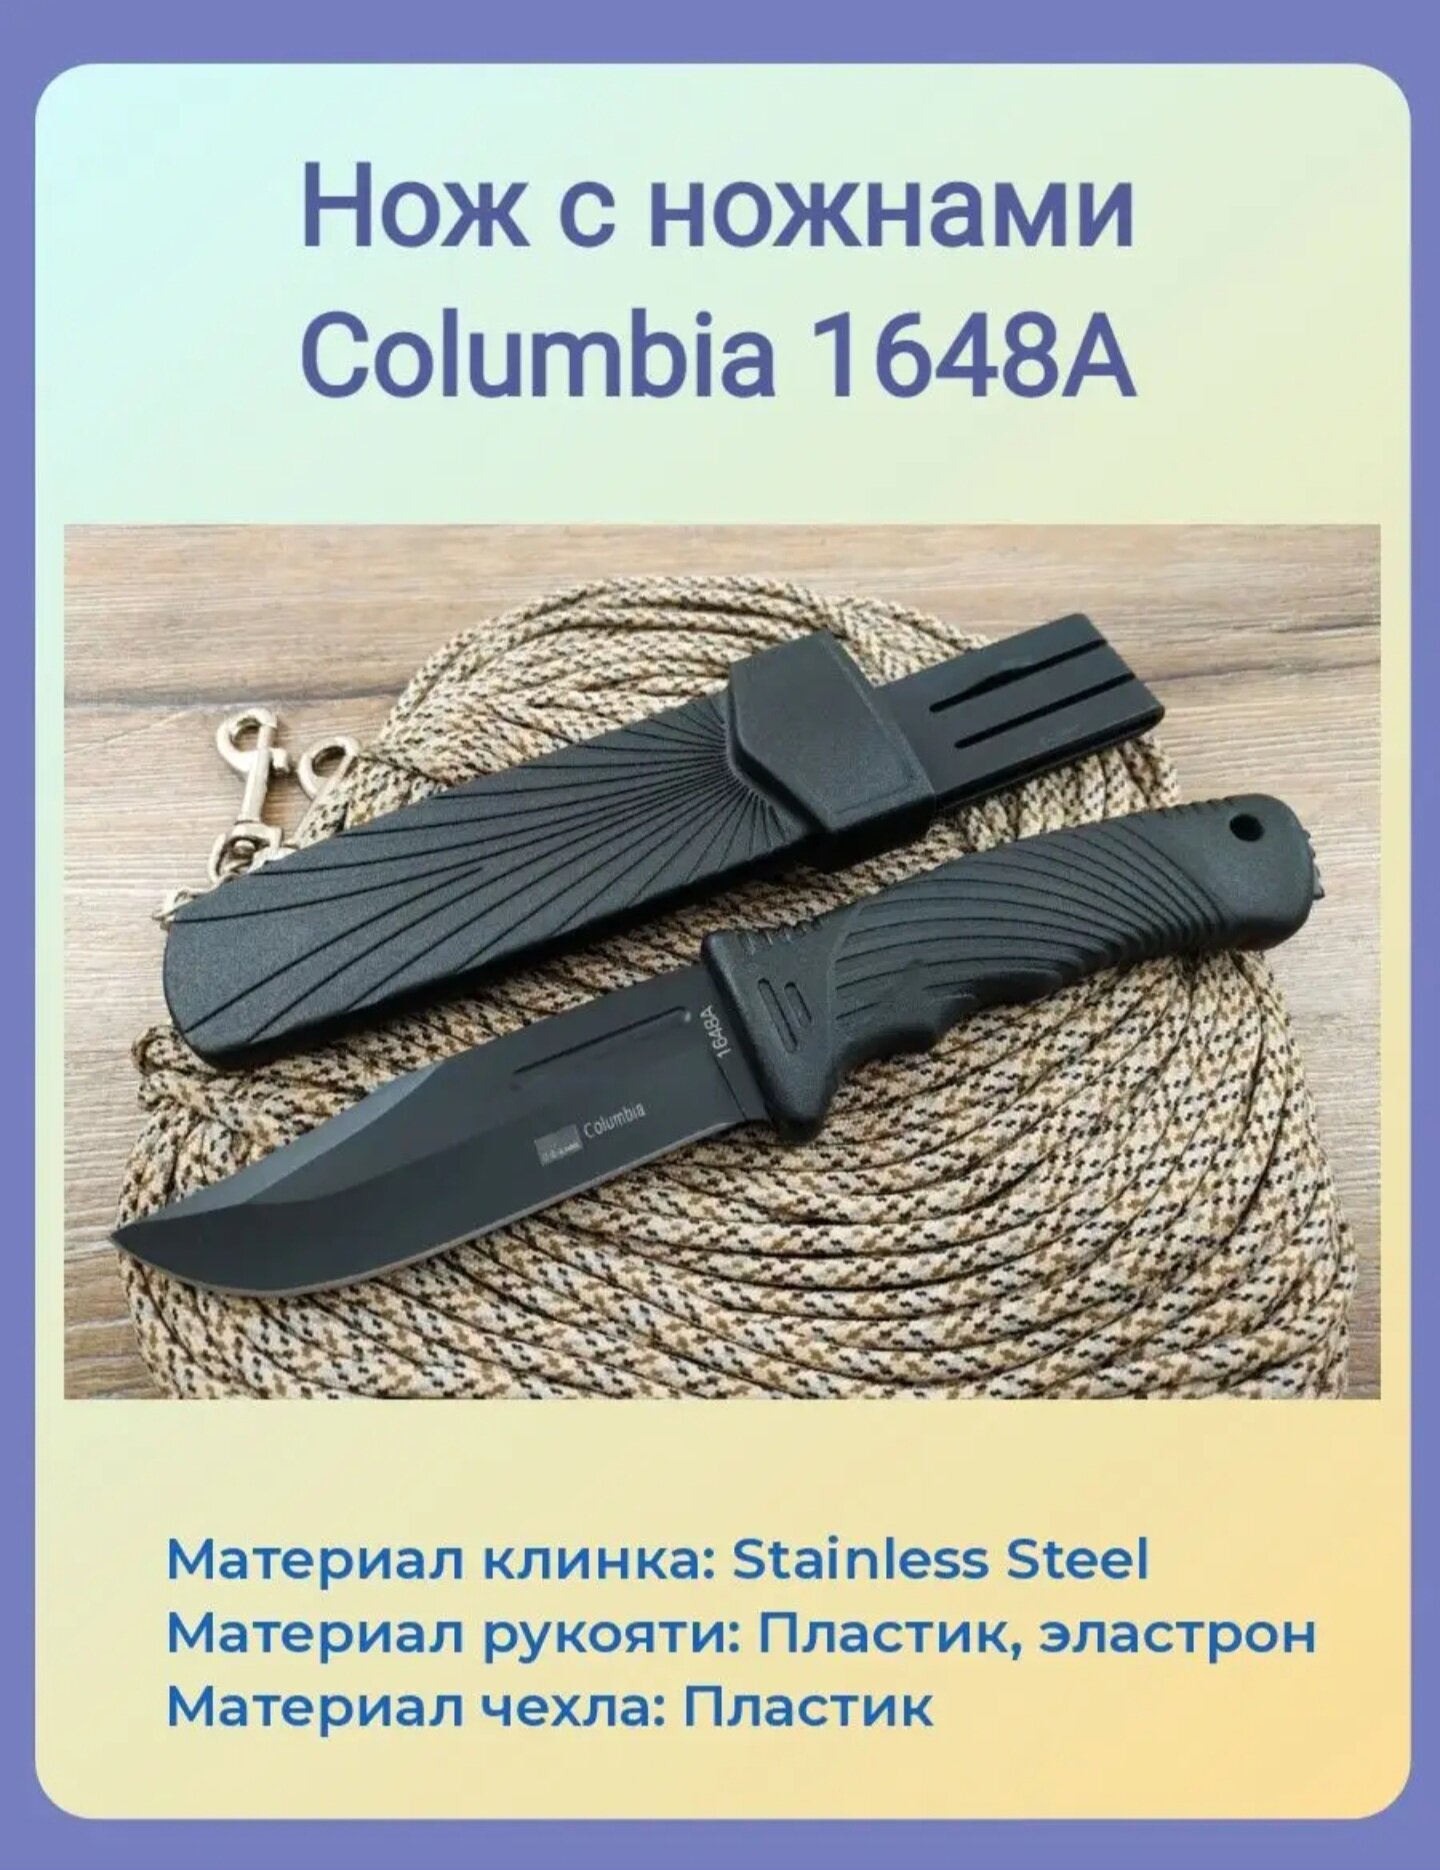 Нож тактический Columbia 1648А в ножнах, рукоять чёрная